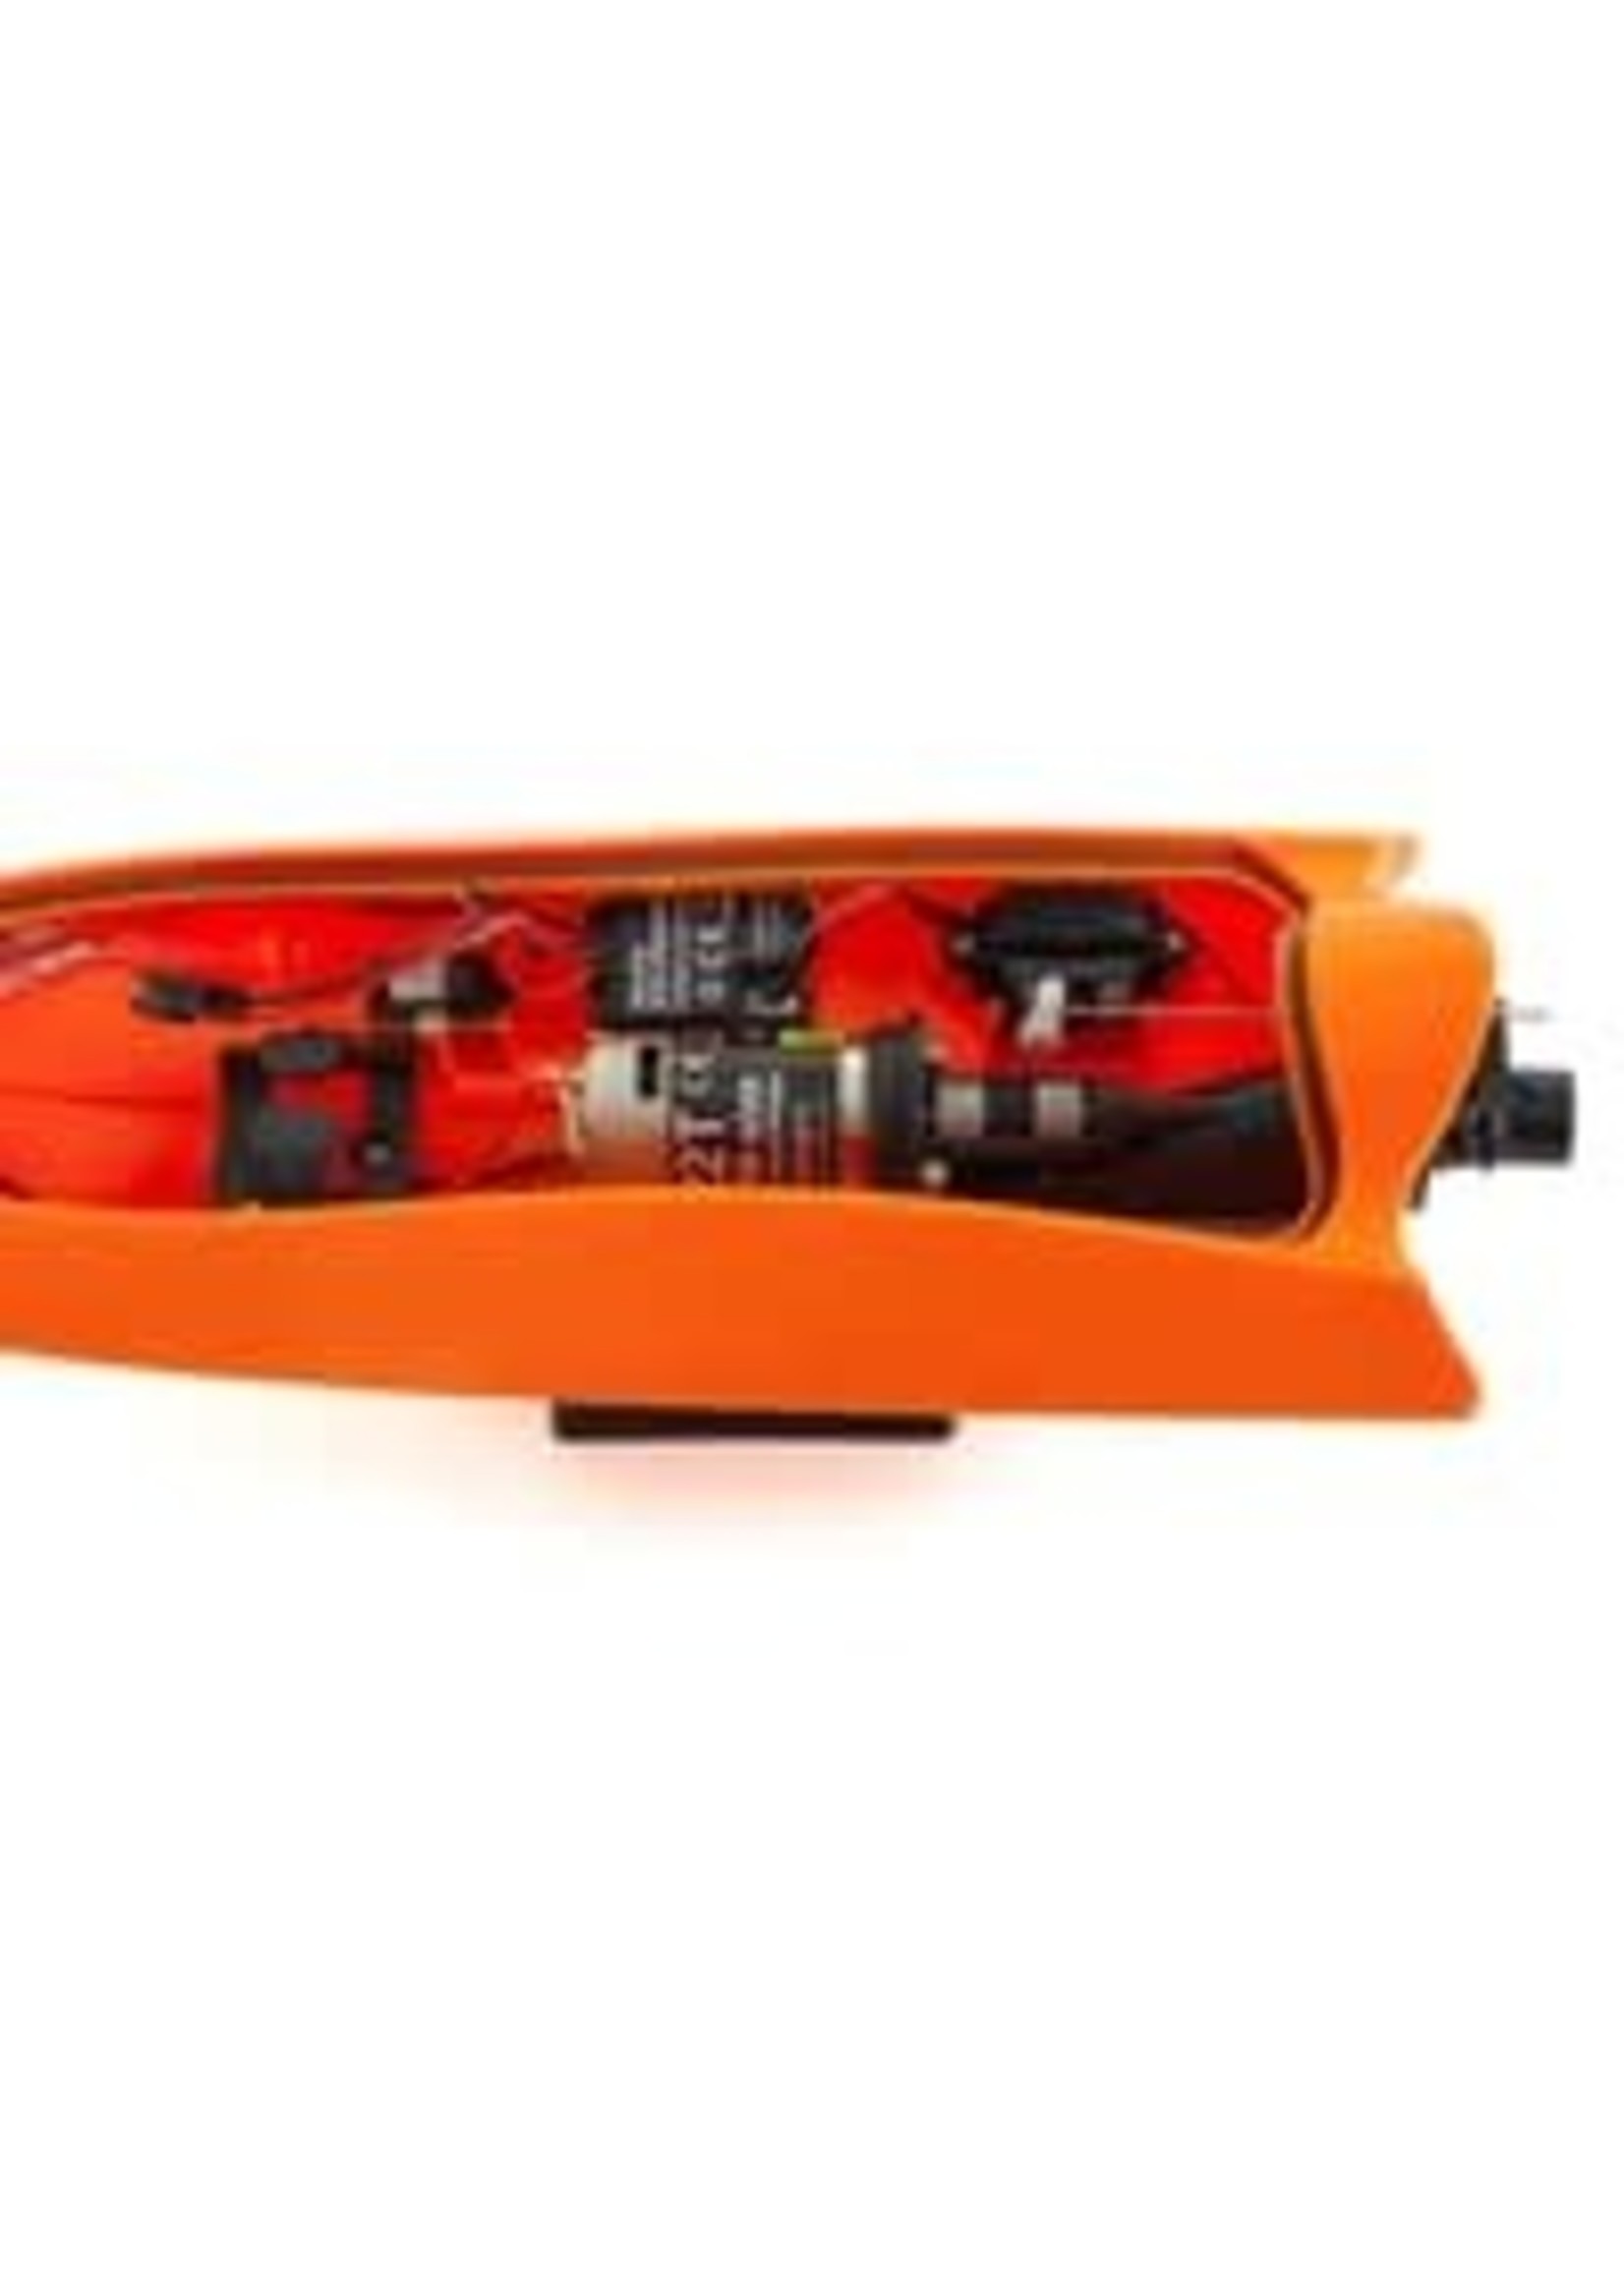 Proboat PRB08031T1 Jet Jam 12-inch Pool Racer, Orange: RTR